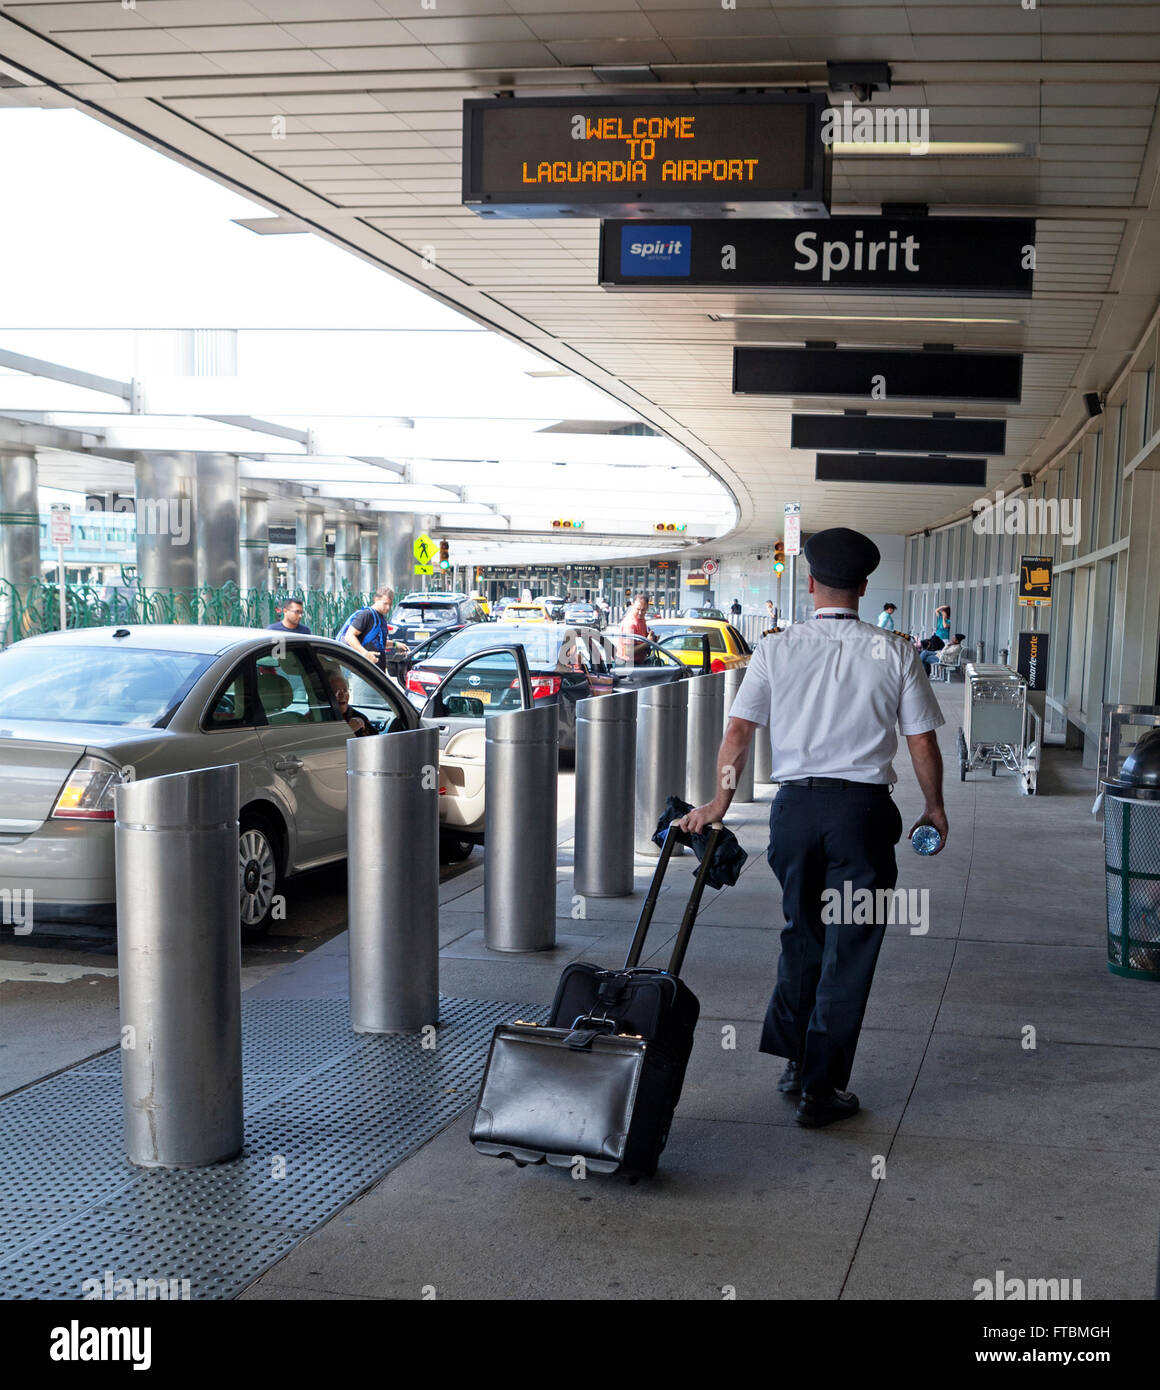 Passagiere am Flughafen La Guardia in New York City kommen zu ihrem Terminal. Stockfoto